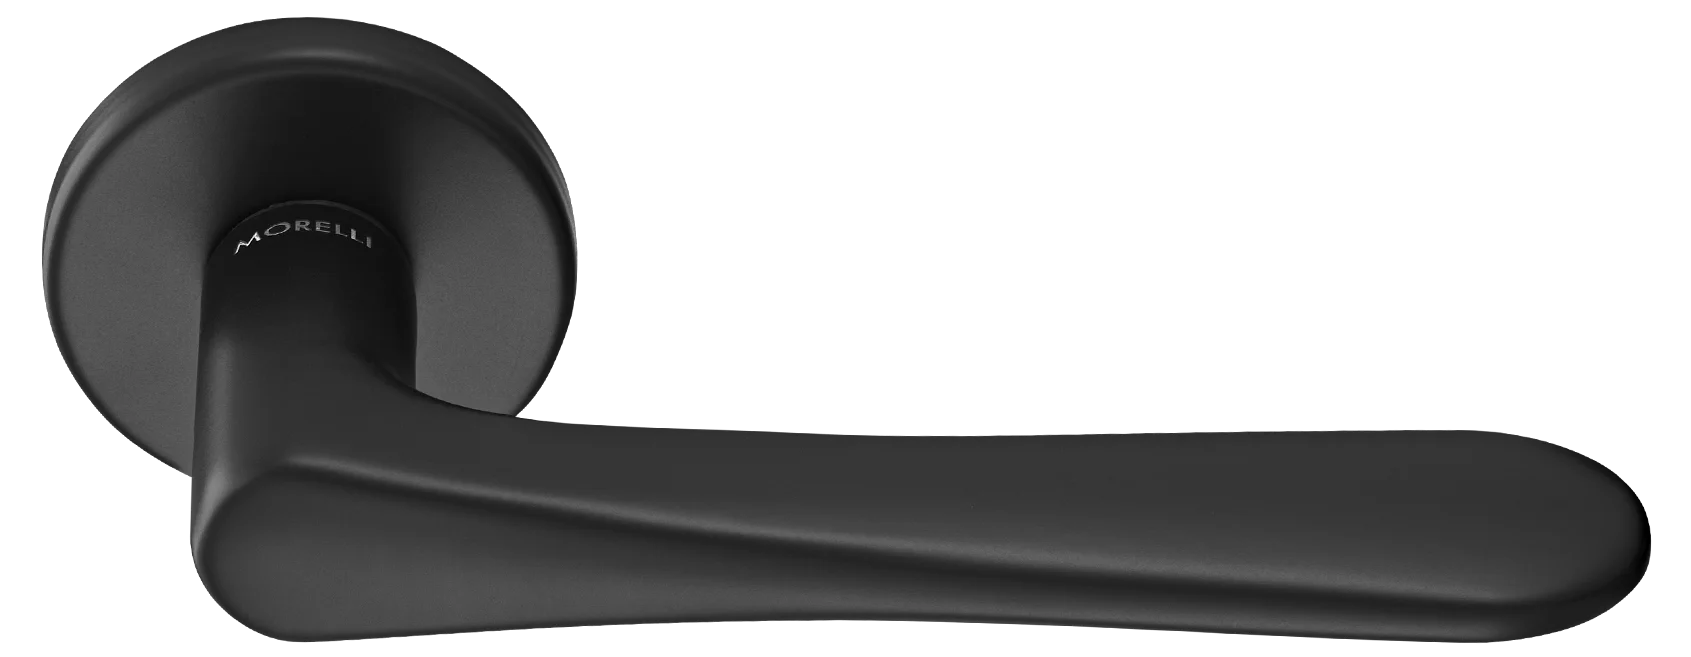 AULA R5 NERO, ручка дверная на розетке 7мм, цвет -  черный фото купить Тольятти